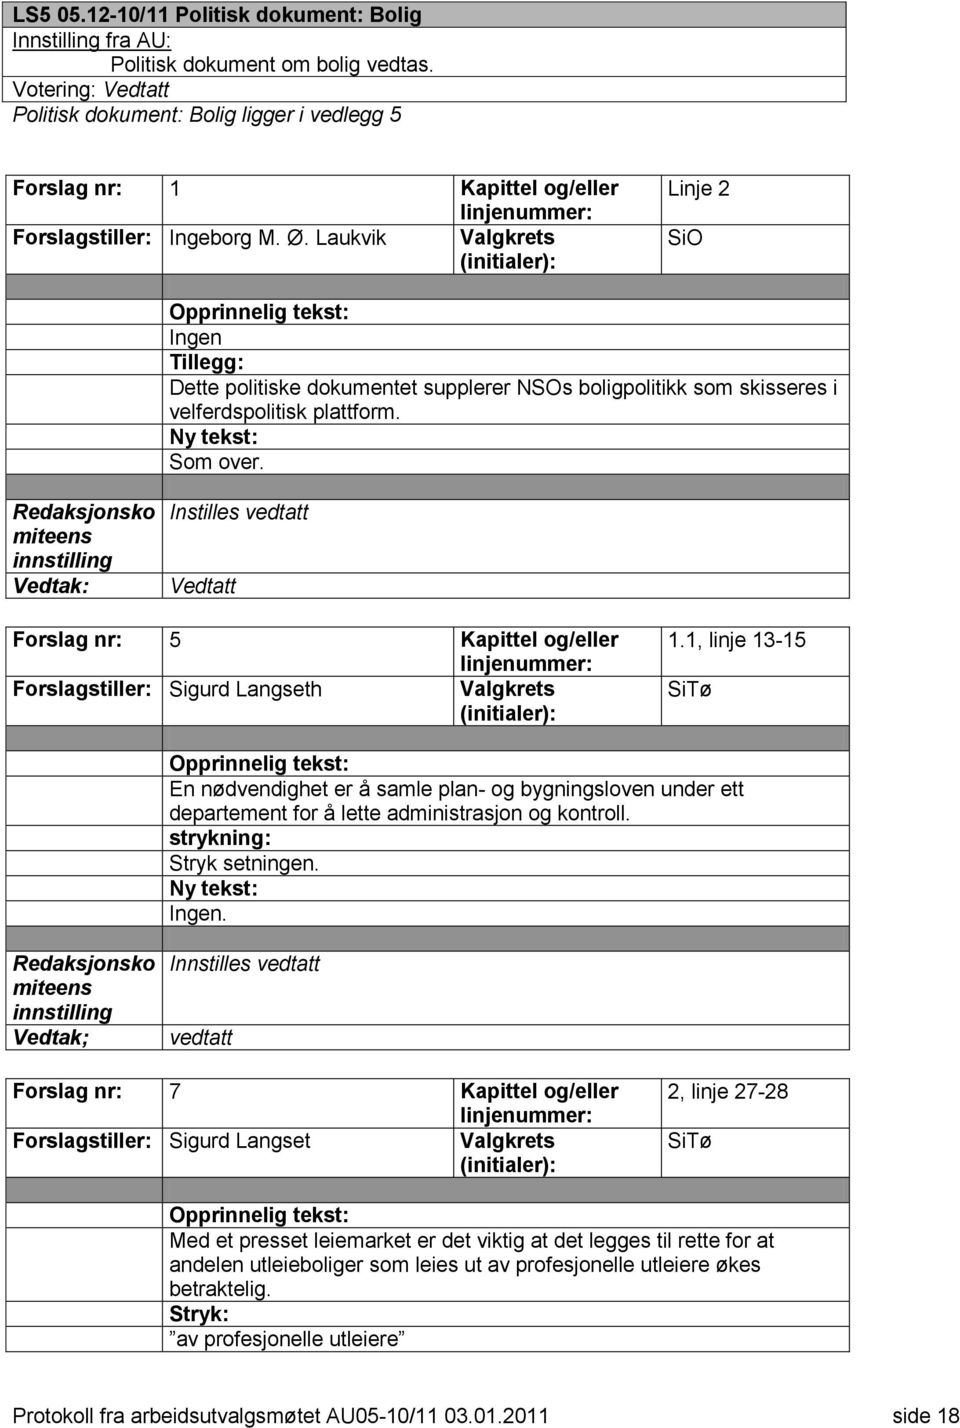 Redaksjonsko miteens innstilling Instilles vedtatt Vedtatt Forslag nr: 5 Kapittel og/eller Forslagstiller: Sigurd Langseth 1.